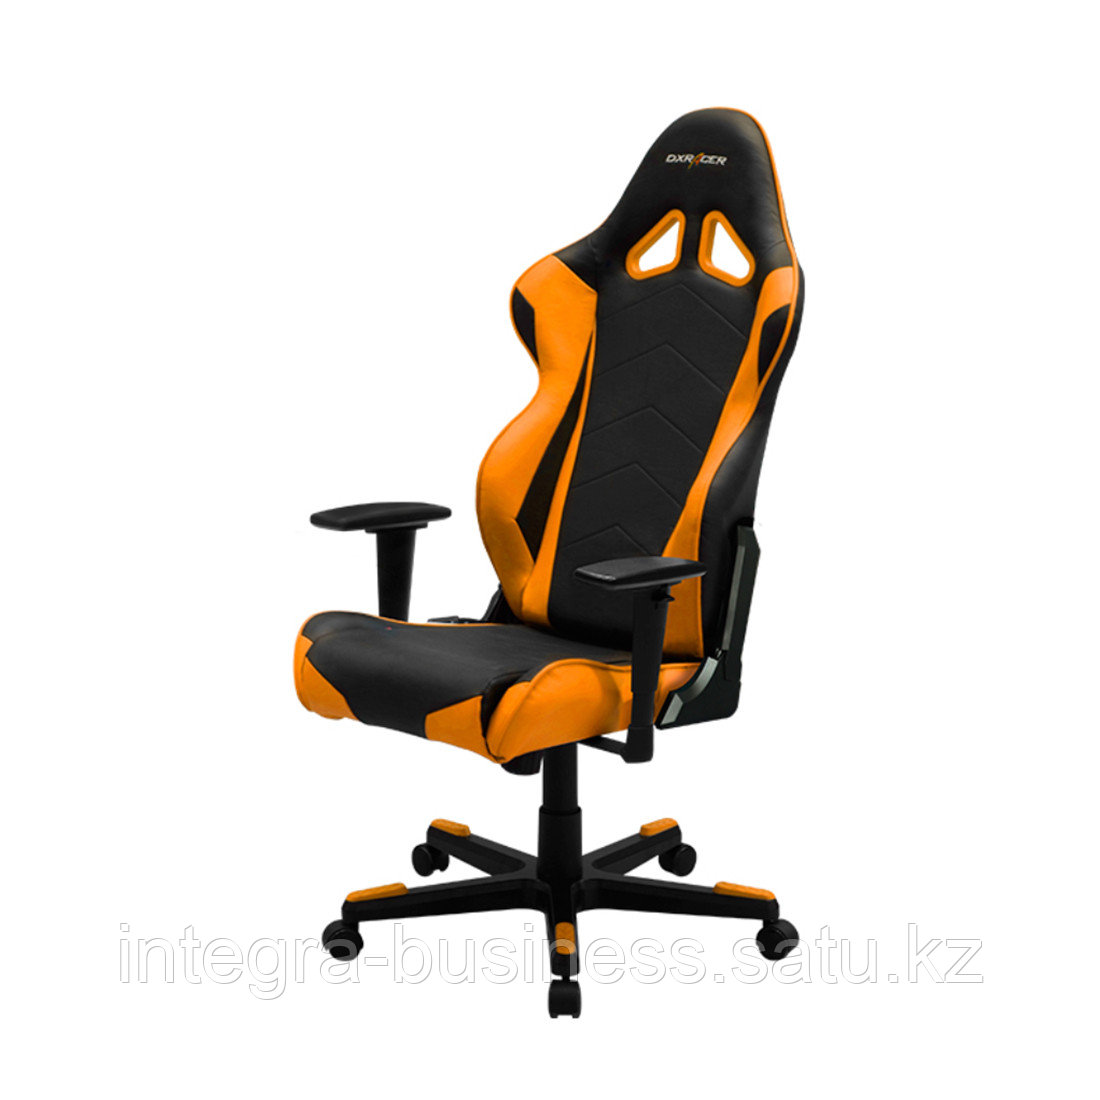 Игровое компьютерное кресло DX Racer OH/RE0/NO, фото 1